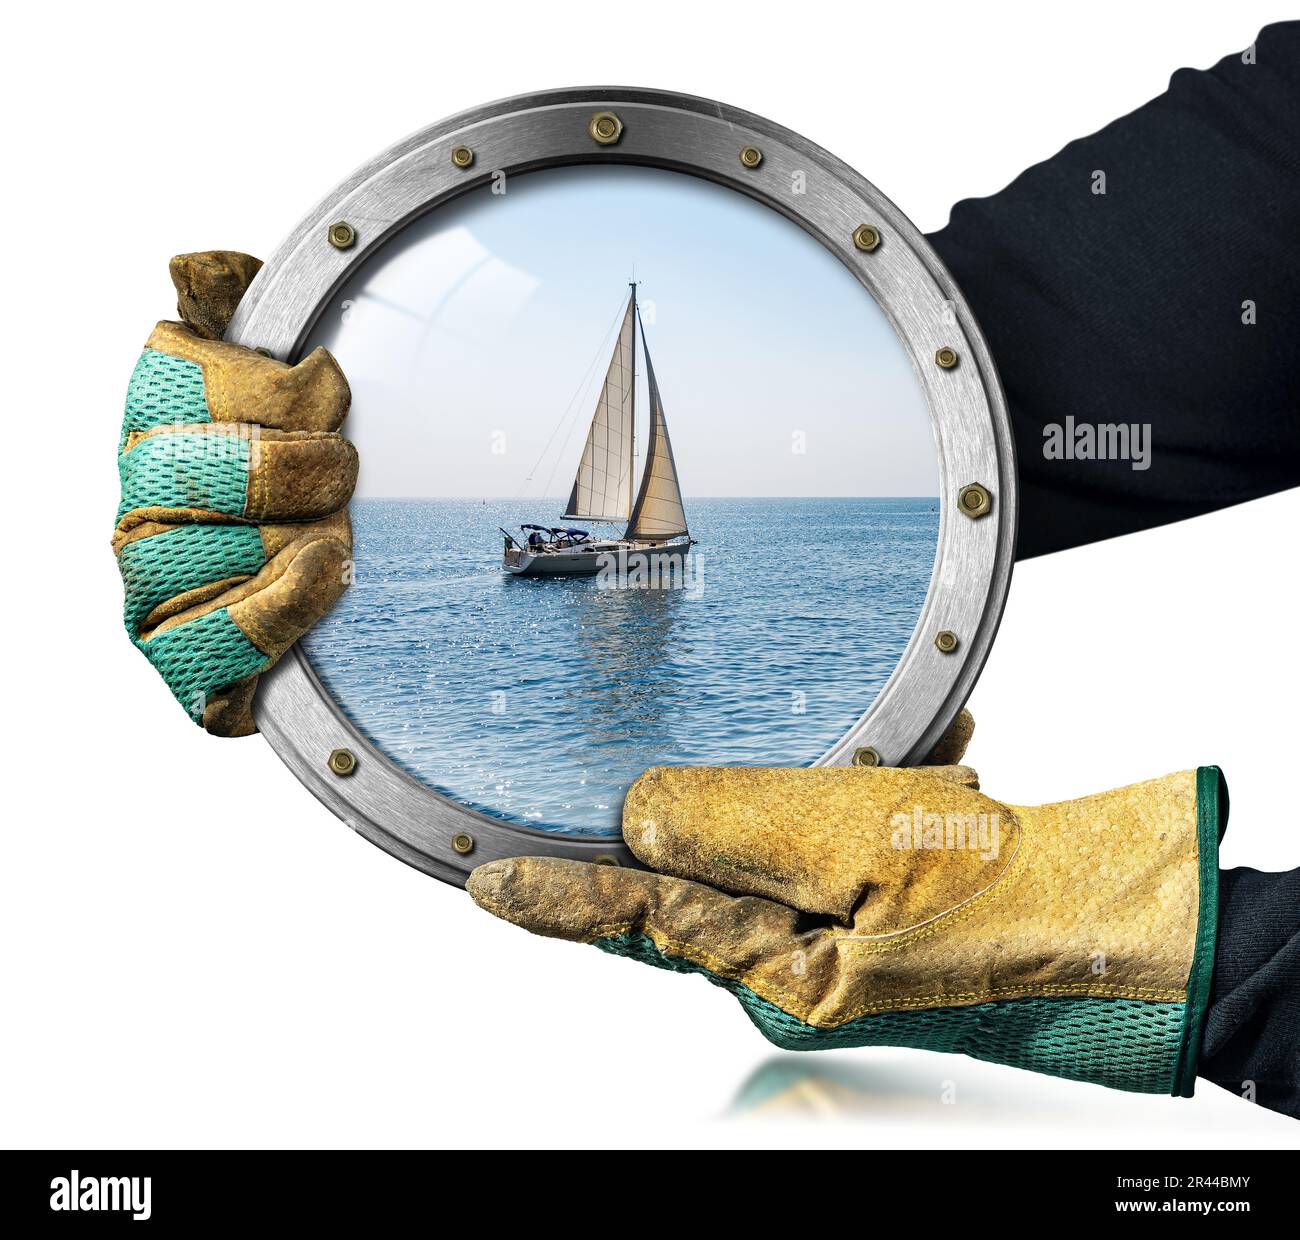 Deux mains avec des gants de travail de protection tiennent un hublot en métal avec un voilier blanc en mouvement dans la mer Méditerranée bleue, Ligurie, Italie, Europe. Banque D'Images